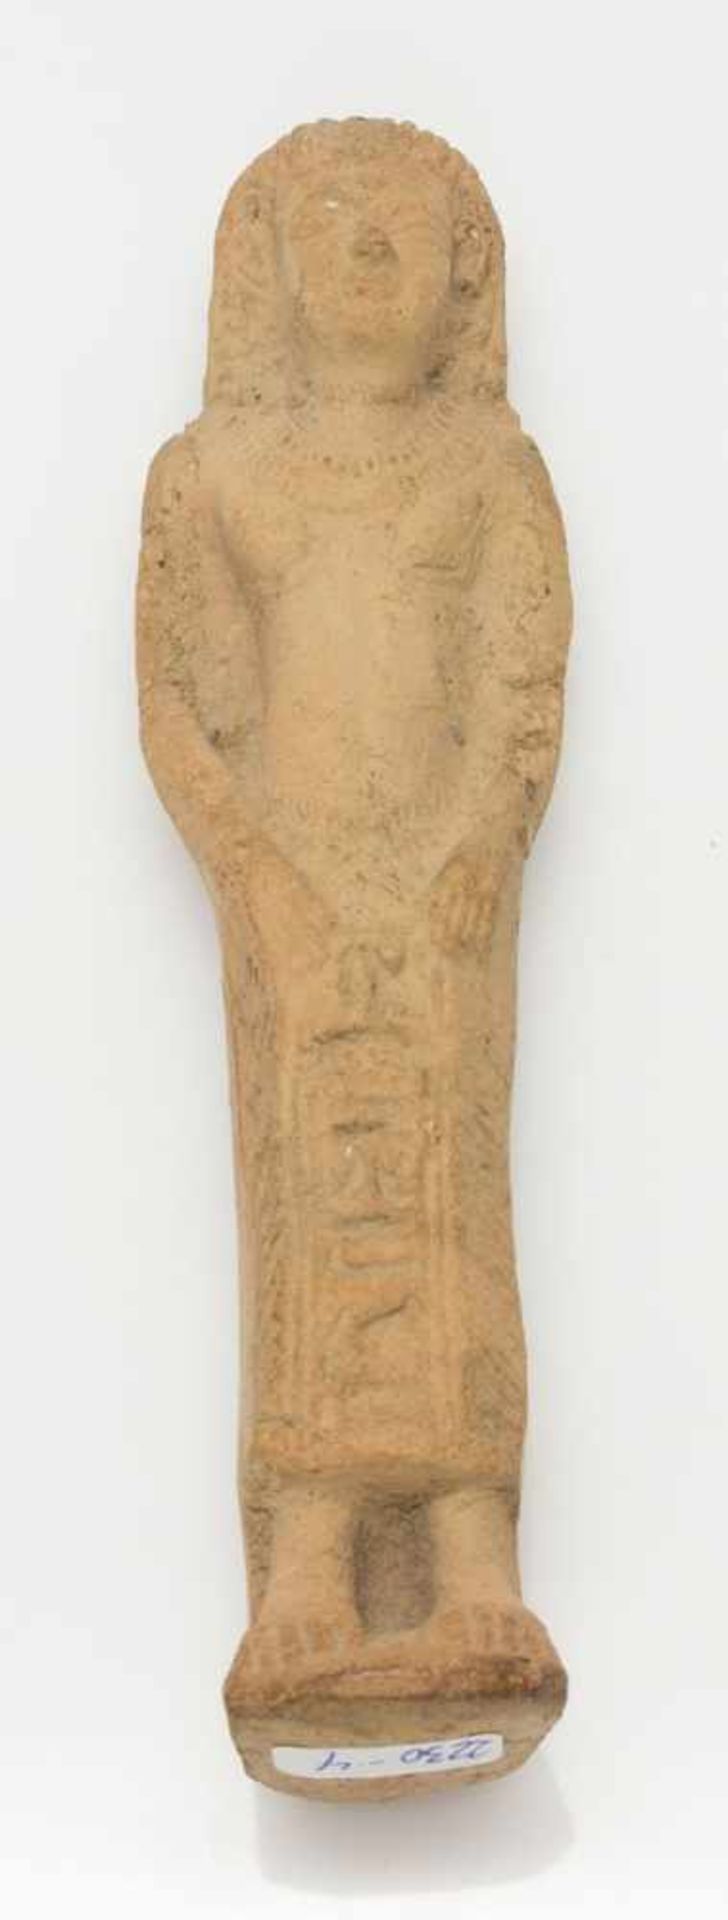 Tonfigurum 1910, Nachbildung einer ägyptischen Pharaonensculptur, Ton, gebrannt, H. 16,5 cm